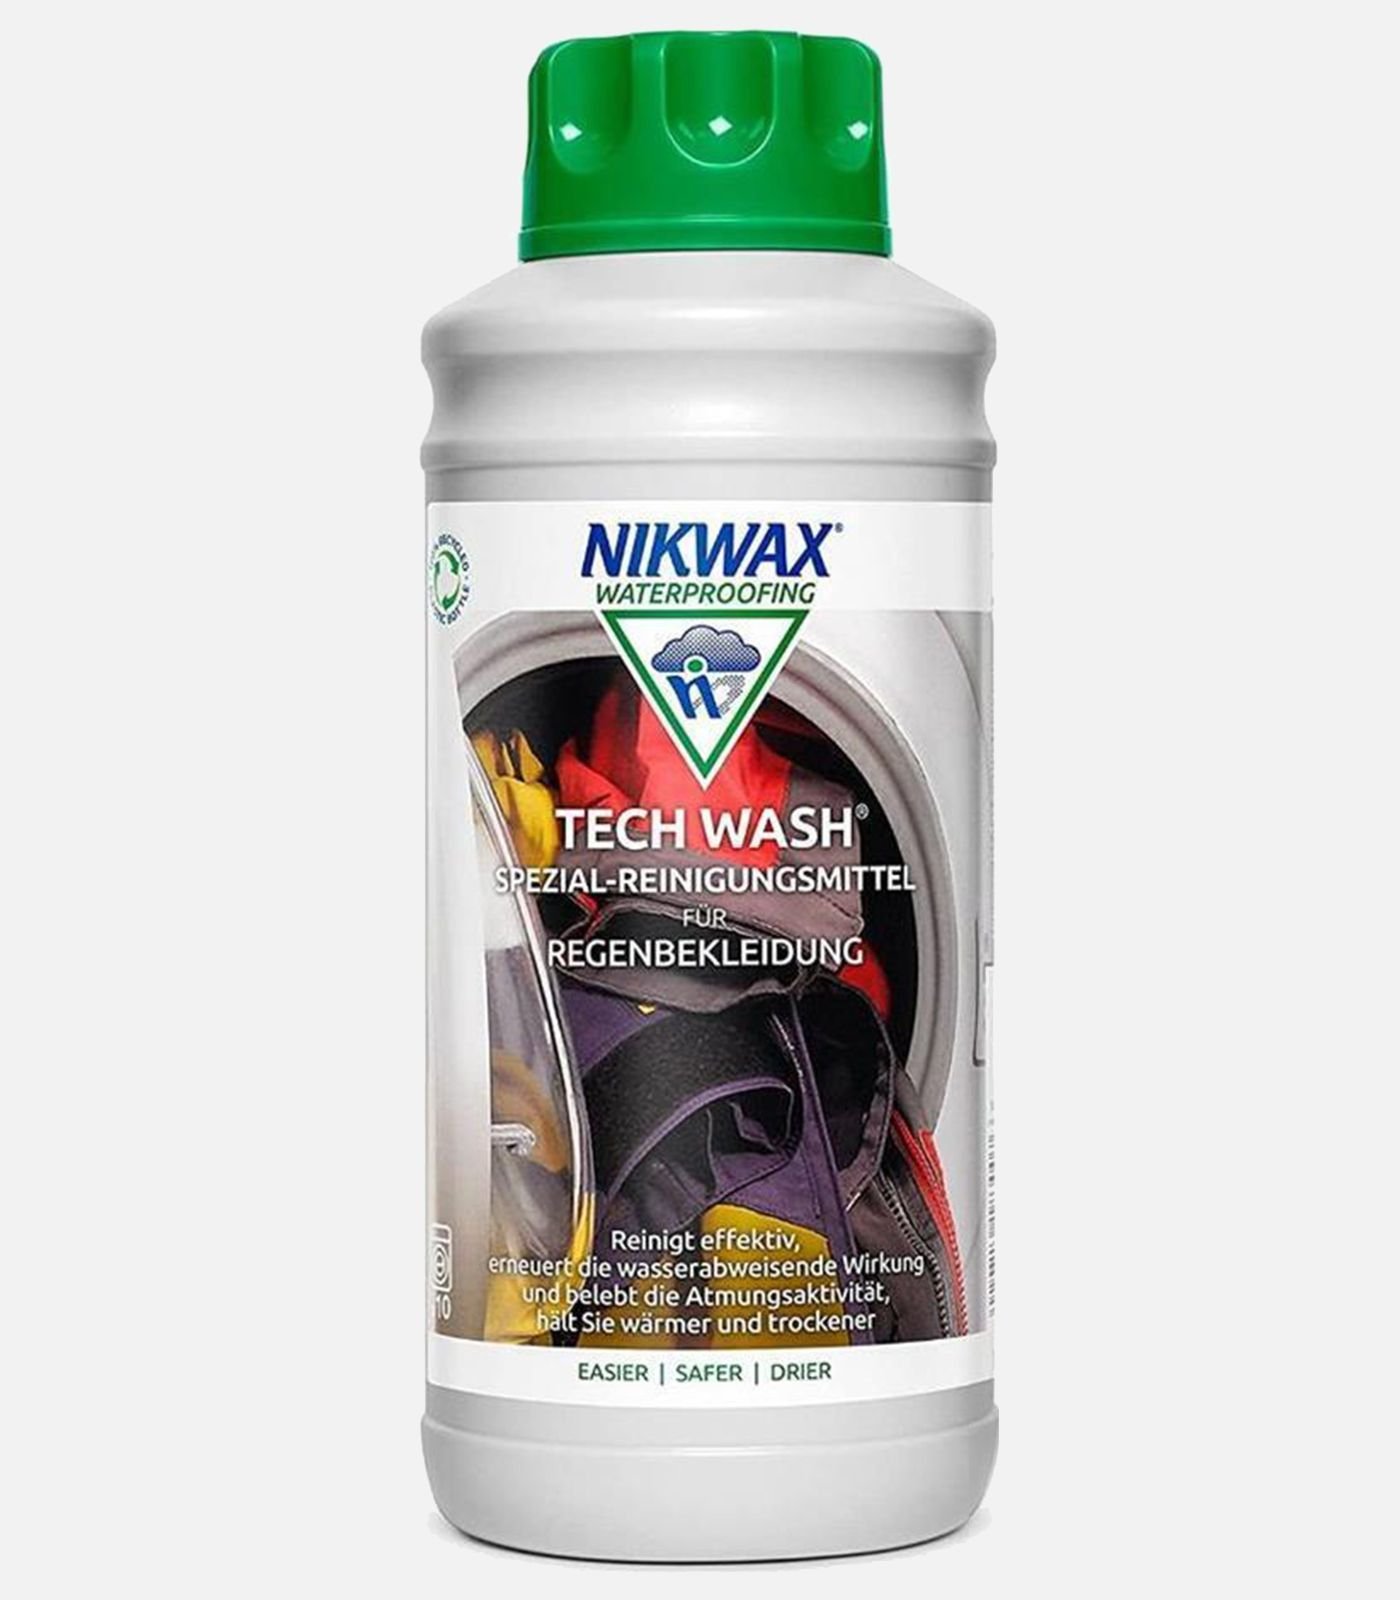 Producto de limpieza líquido Nikwax especial para ropa impermeable y transpirable - 300 ml